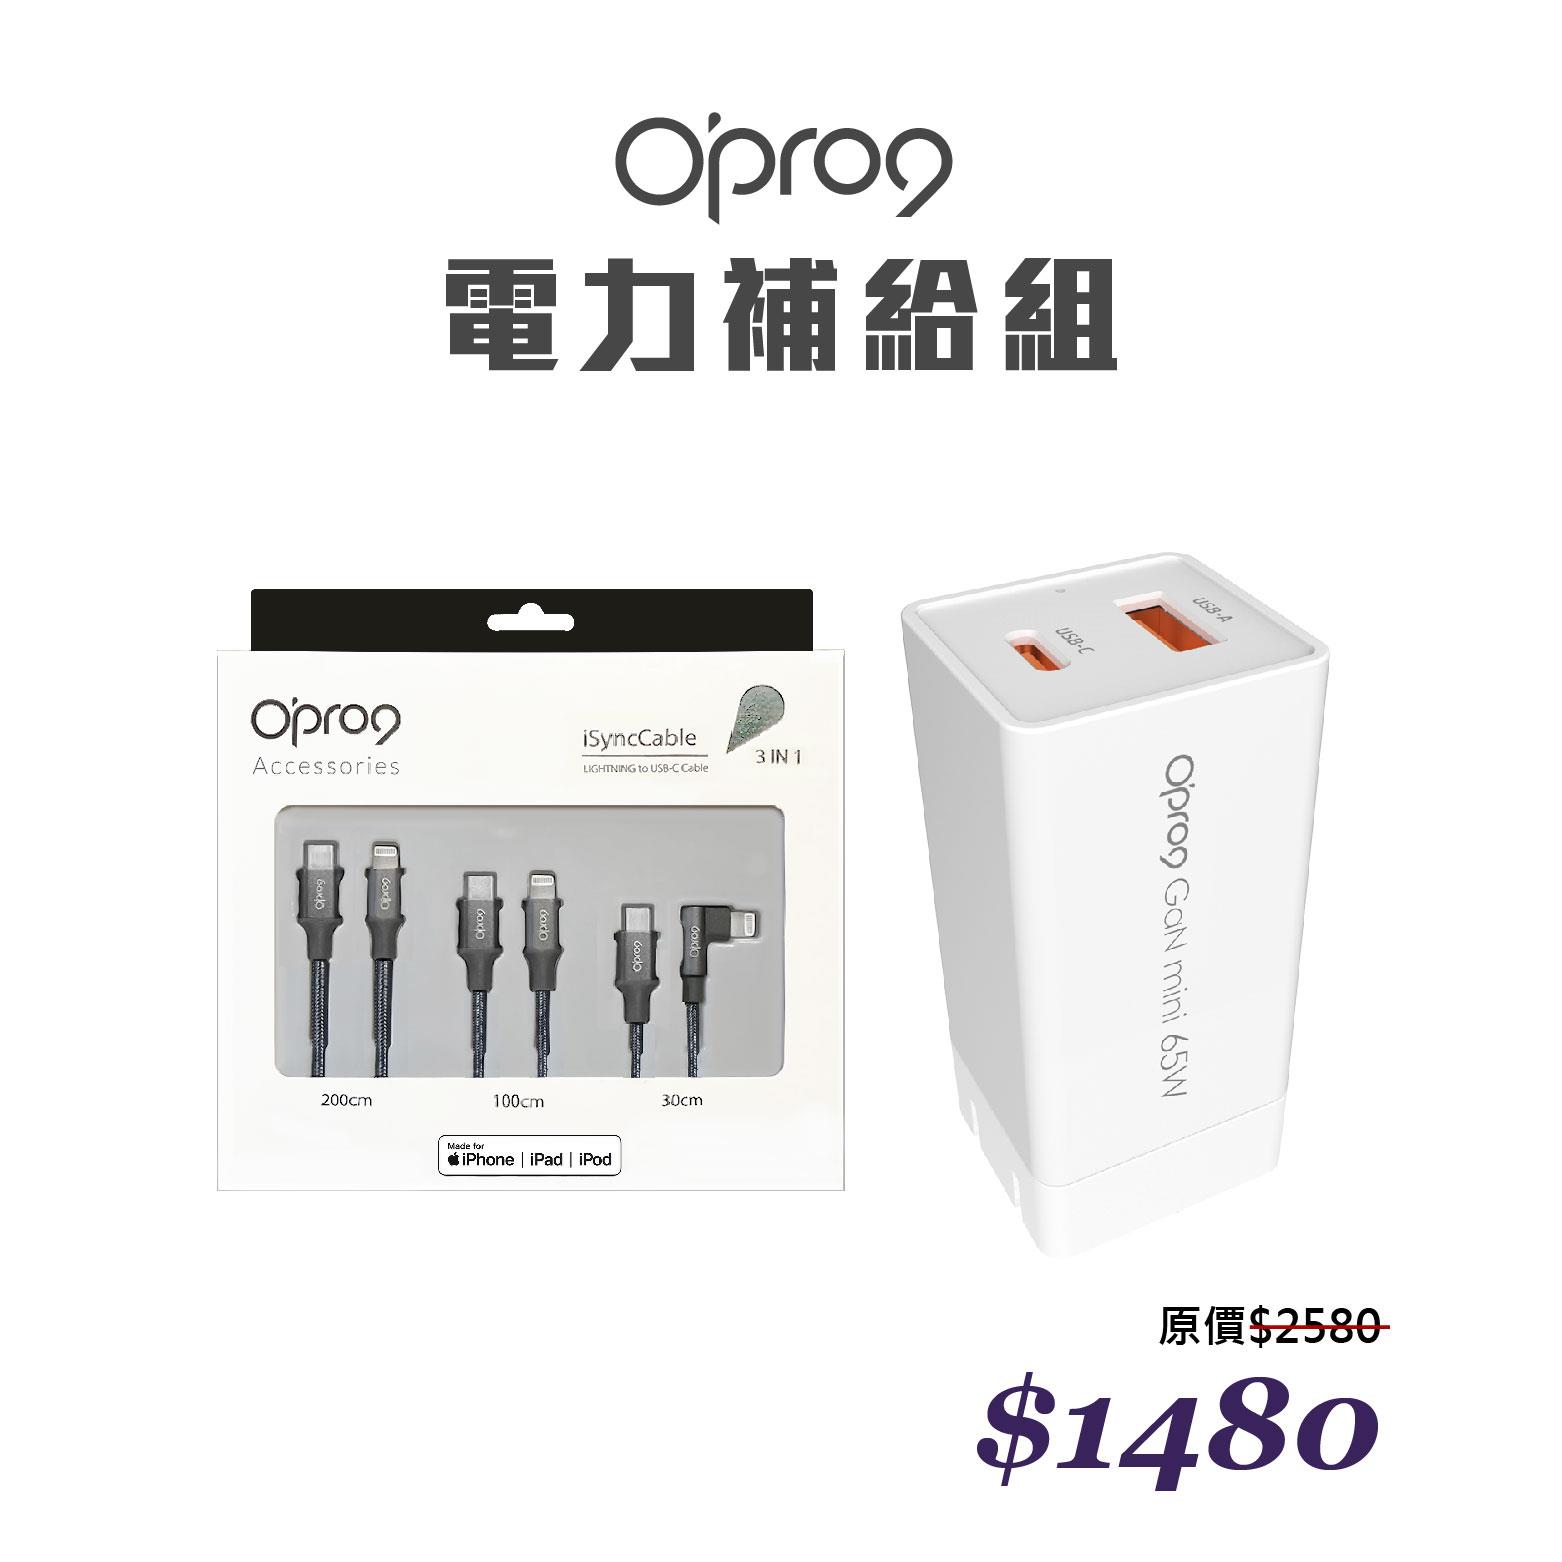 【618年中慶】【電力補給組】Opro9 GaN 65W 氮化鎵快充電源供應器 + 蘋果TypeC to Lightning編織數據線組合包 (內含200cm+100cm+30cm各1入)